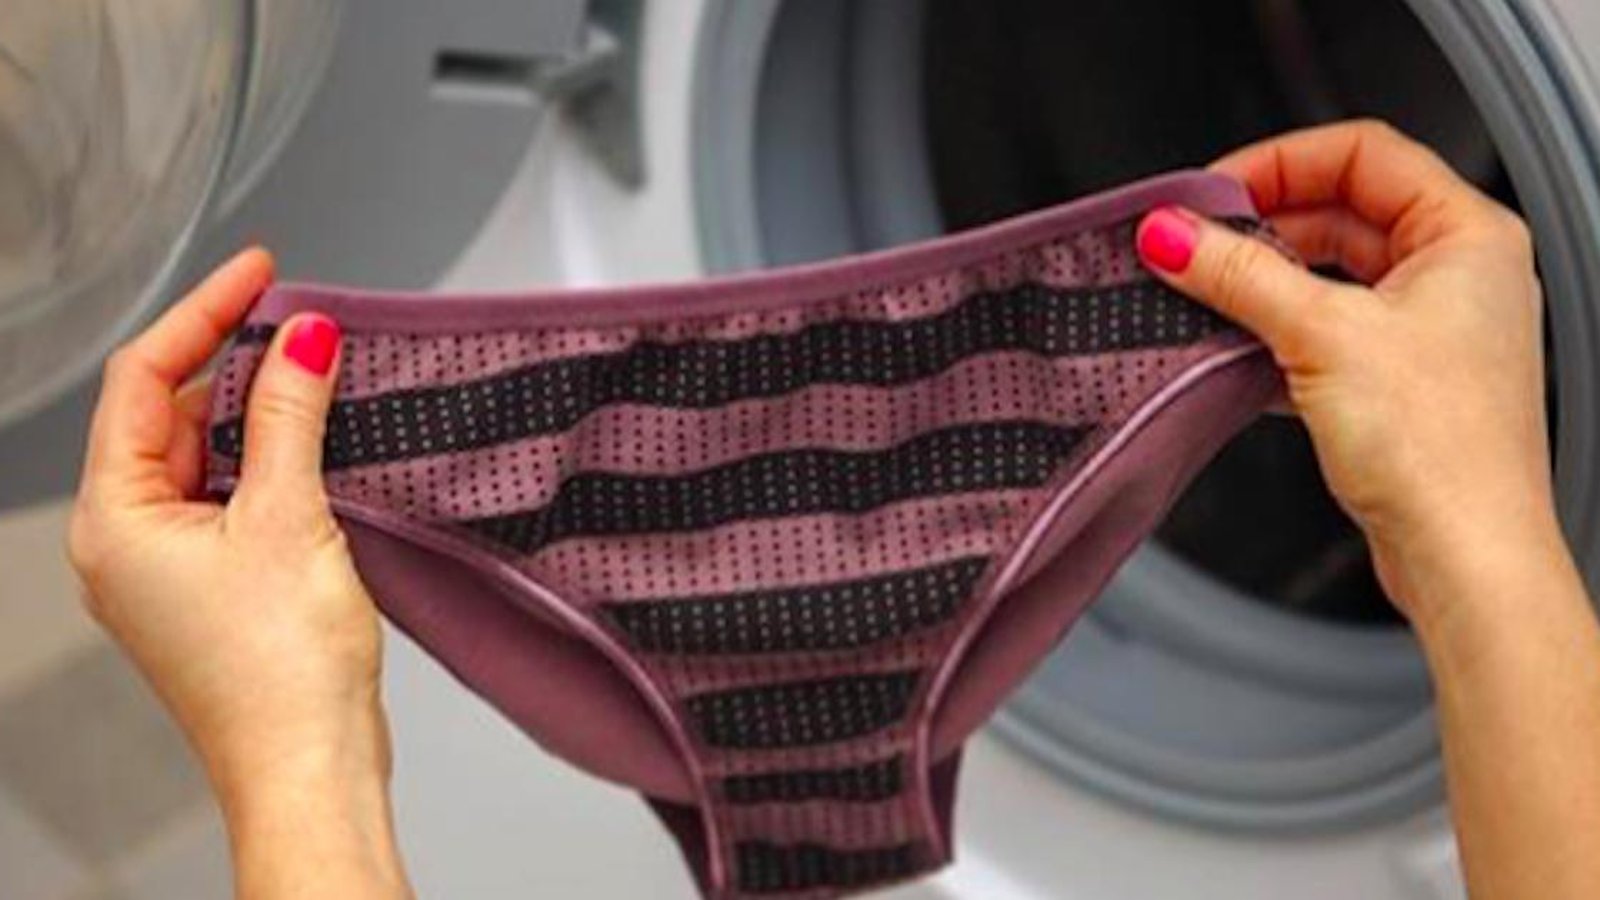 Oseriez-vous porter des sous-vêtements plusieurs jours sans les laver?